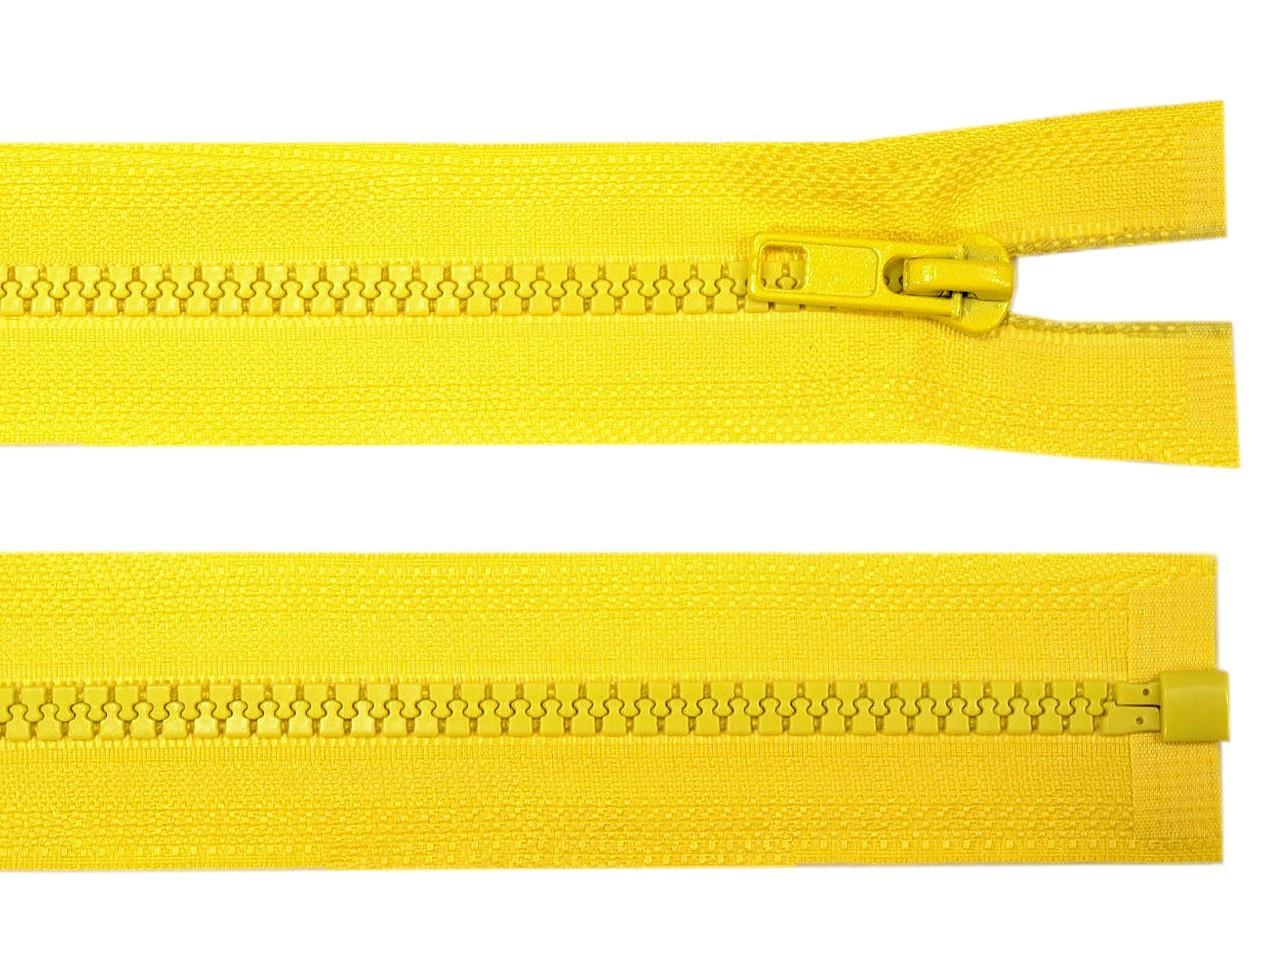 Kostěný zip šíře 5 mm délka 85 cm bundový, barva 110 žlutá